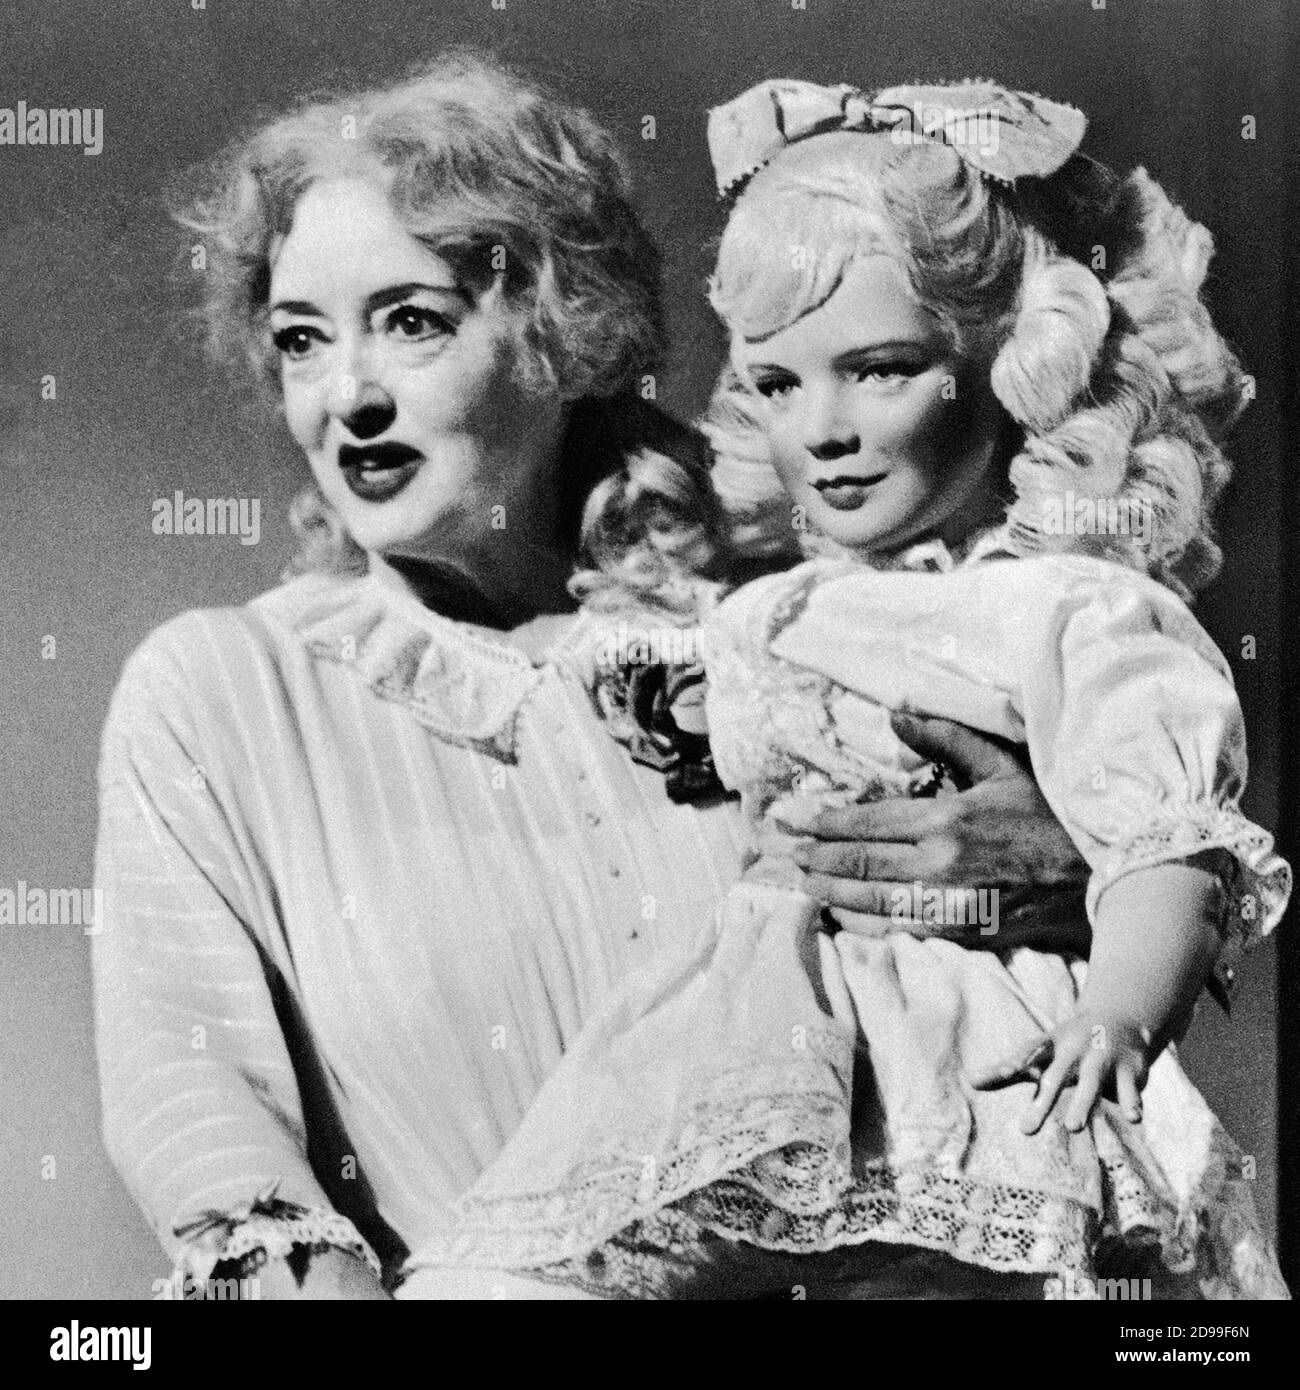 1963 , USA : Pubblicity Still für den Film mit BETTE DAVIS mit dem Titel WHAT EVER HAPPENED TO BABY JANE? ( Che fine ha fatto Baby Jane? ) , von ROBERT ALDRICH , aus einem Roman von Henry Farrell , WARNER BROS. Und Seven Arts productions - KINO - FILM - Bambola - Puppe - TRILLER - HORROR - FILM ----- NICHT FÜR WERBEZWECKE --- NON PER USO PUBBLICITARIO --- NICHT FÜR DEN GEBRAUCH VON GADGETS - ACHTUNG: Dieses Foto kann nur von Publikationen im Zusammenhang mit der Werbung für den oben genannten Film reproduziert werden. Nur Für Redaktionelle Zwecke.------- Archivio GBB Stockfoto